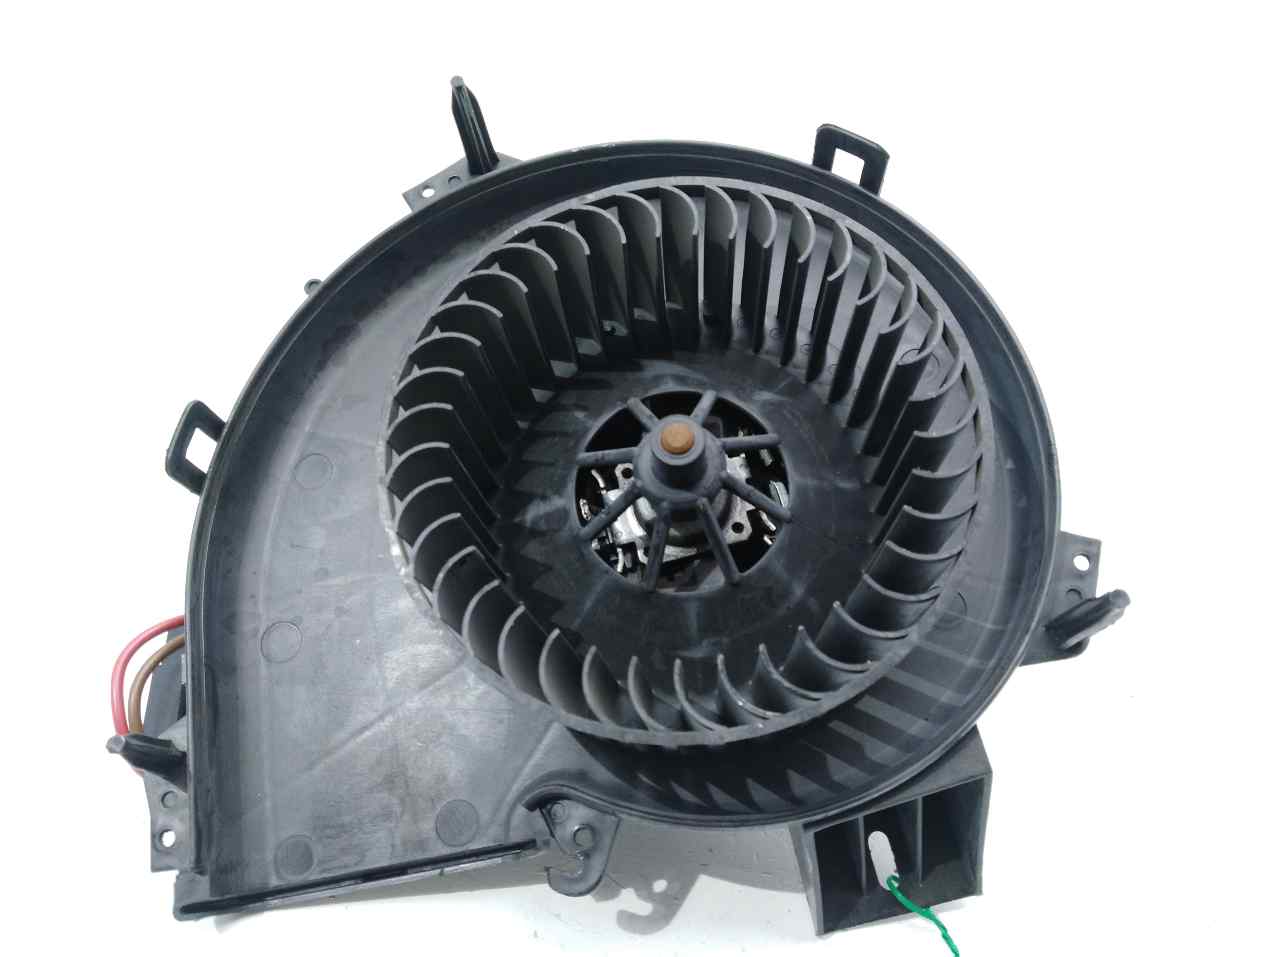 OPEL Corsa C (2000-2006) Heater Blower Fan 006453T, 006453T, 006453T 23531263